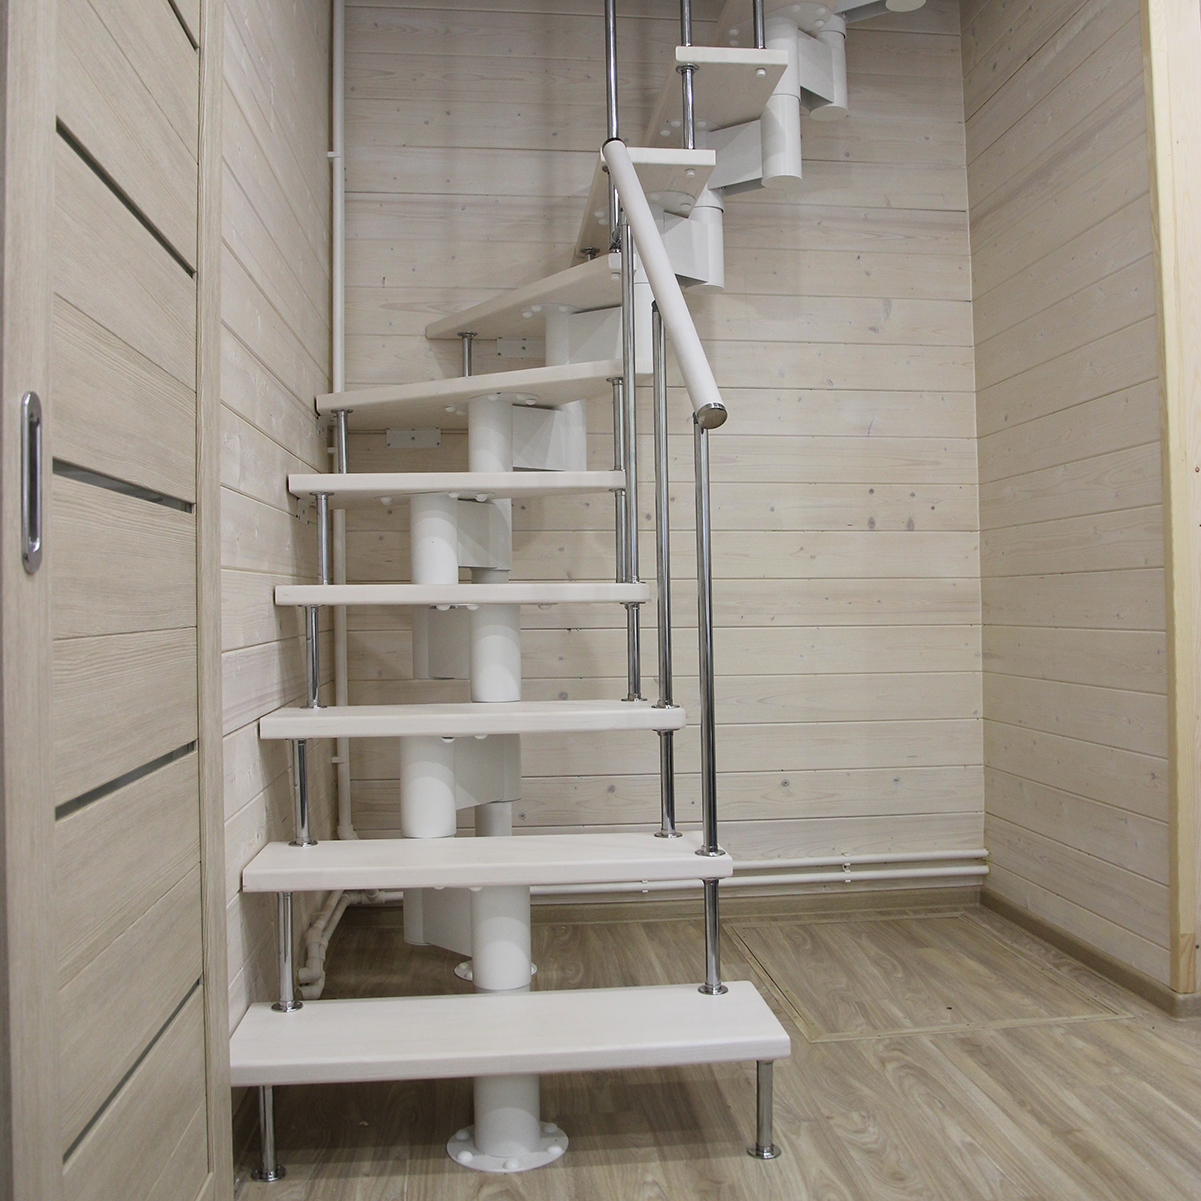 Изготовление лестницы второго этажа в частном доме - Симферополь, Крым. Арт-брус